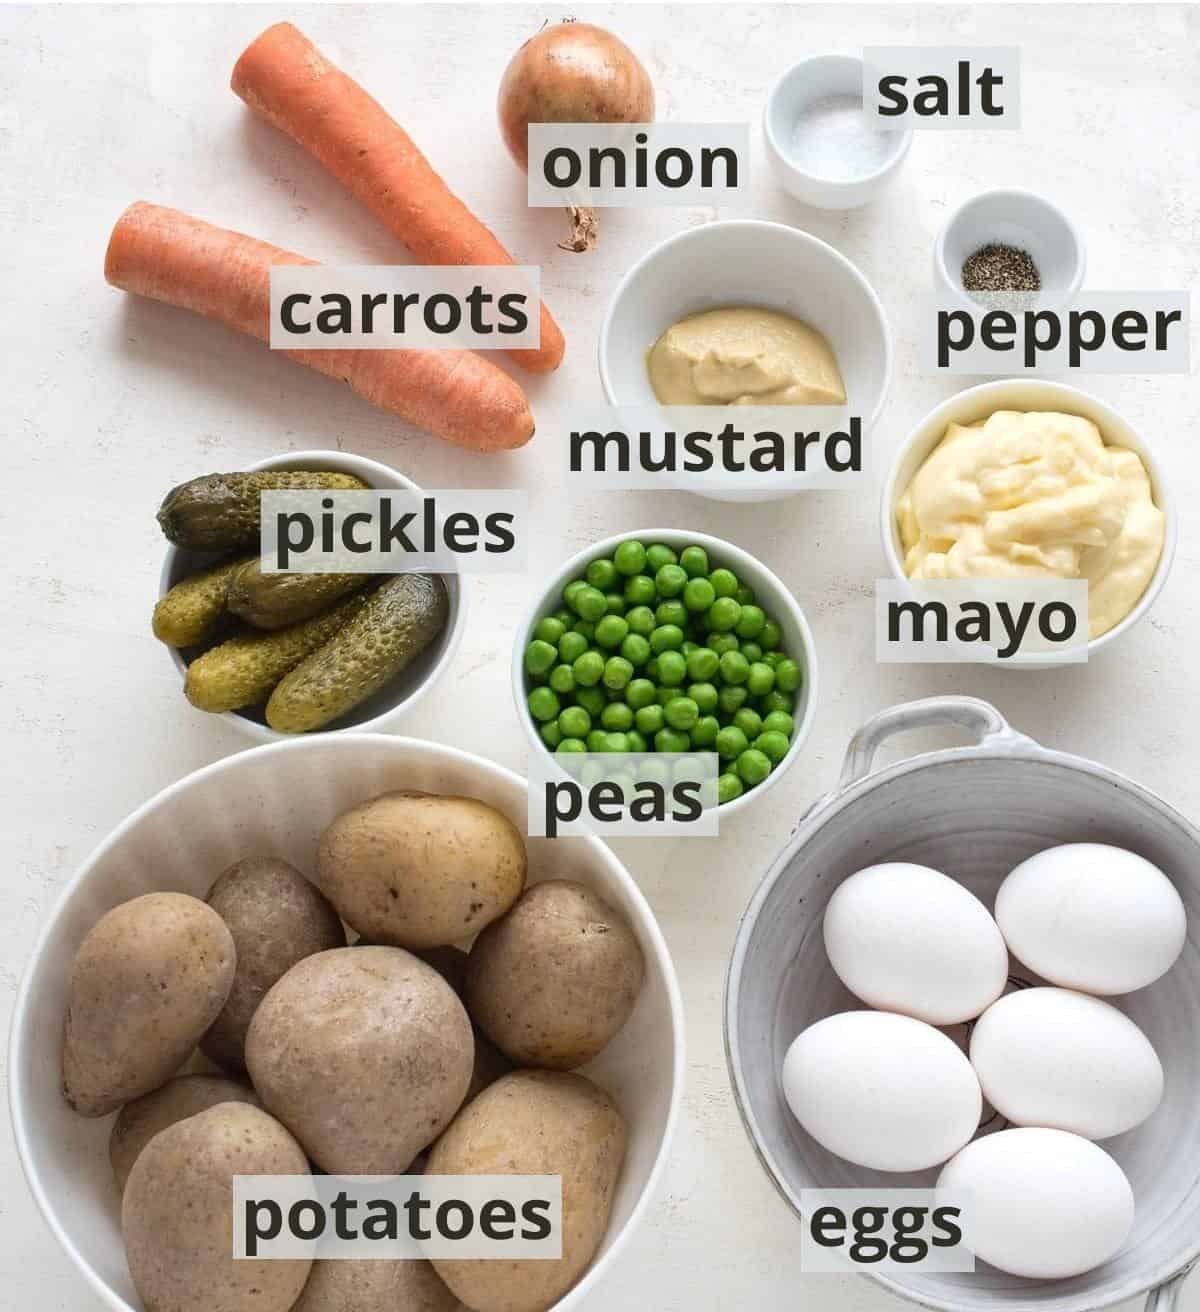 Czech potato salad ingredients inclusive captions.